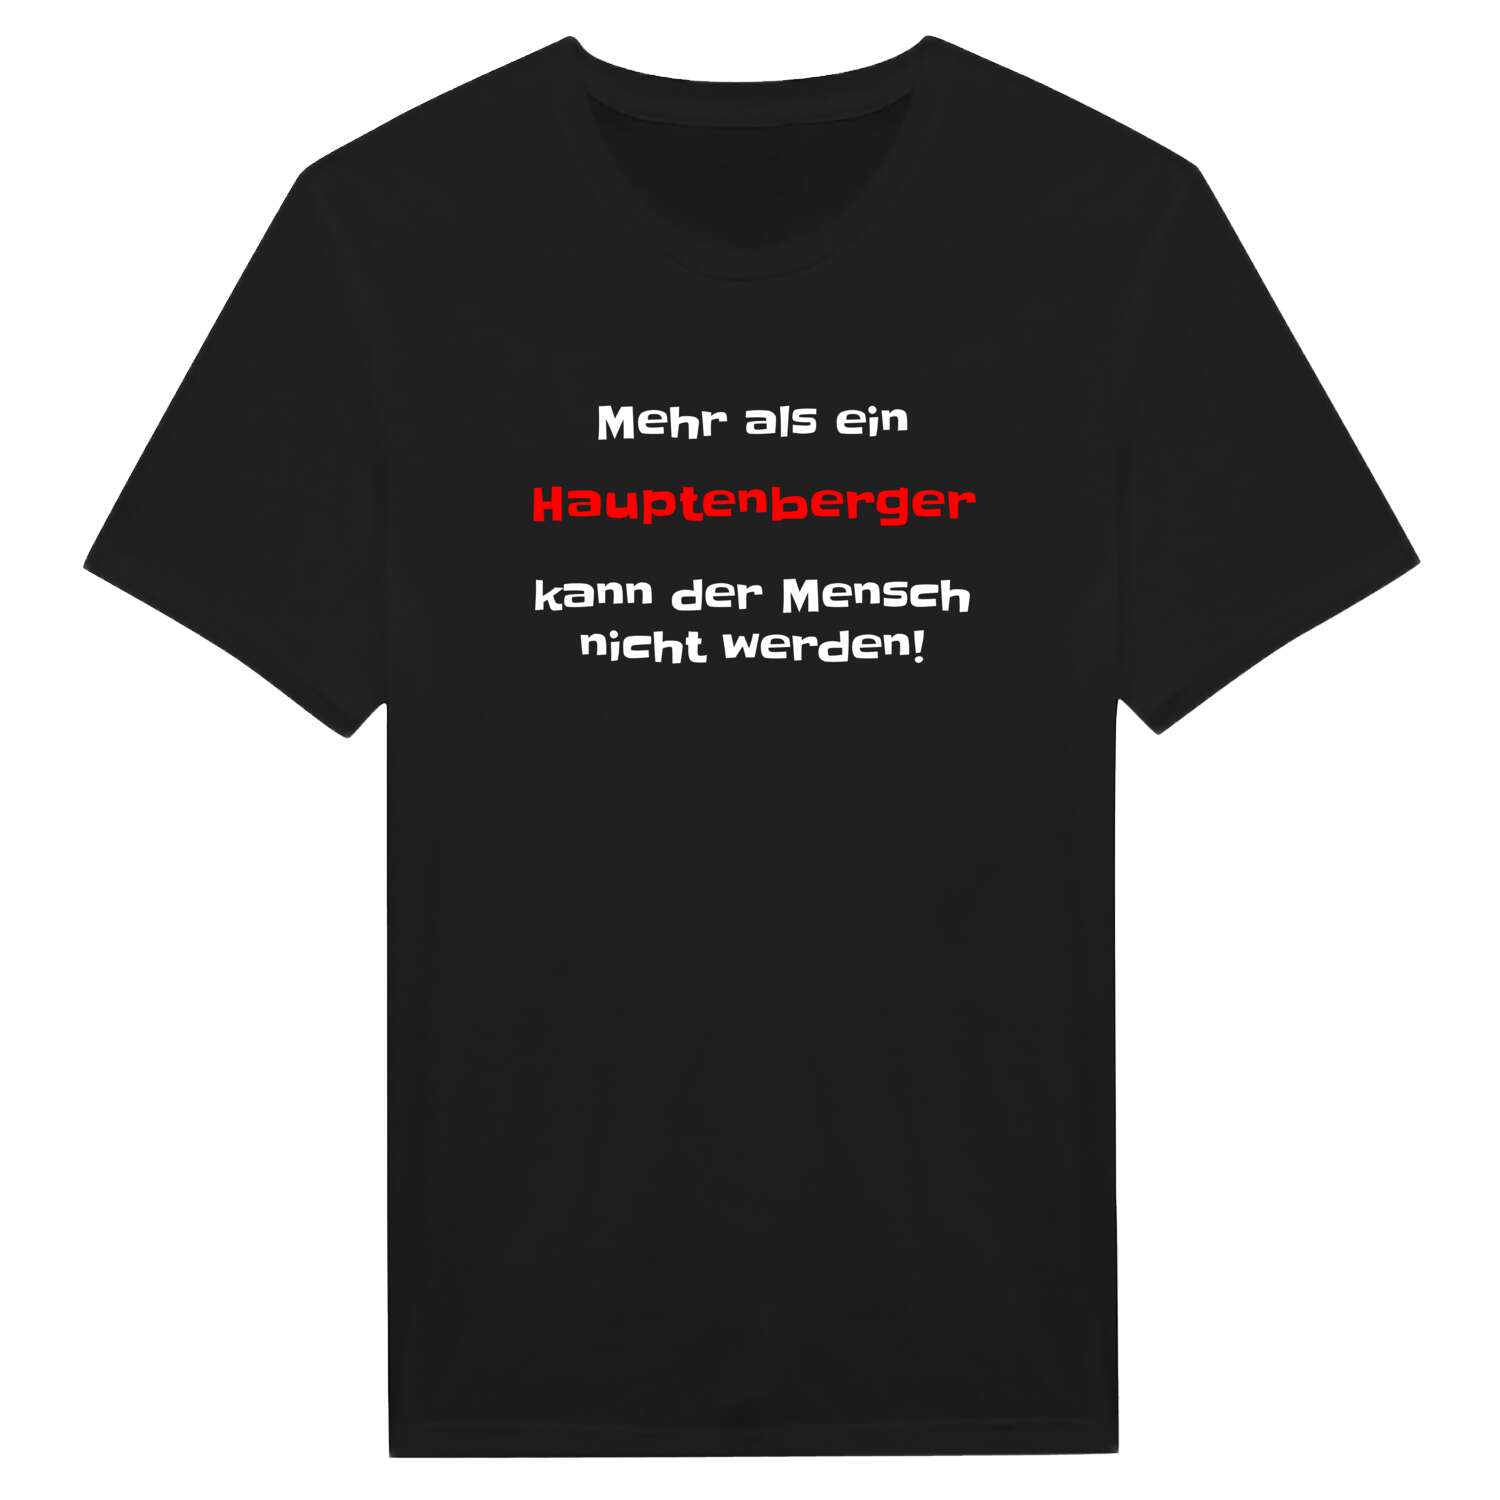 Hauptenberg T-Shirt »Mehr als ein«